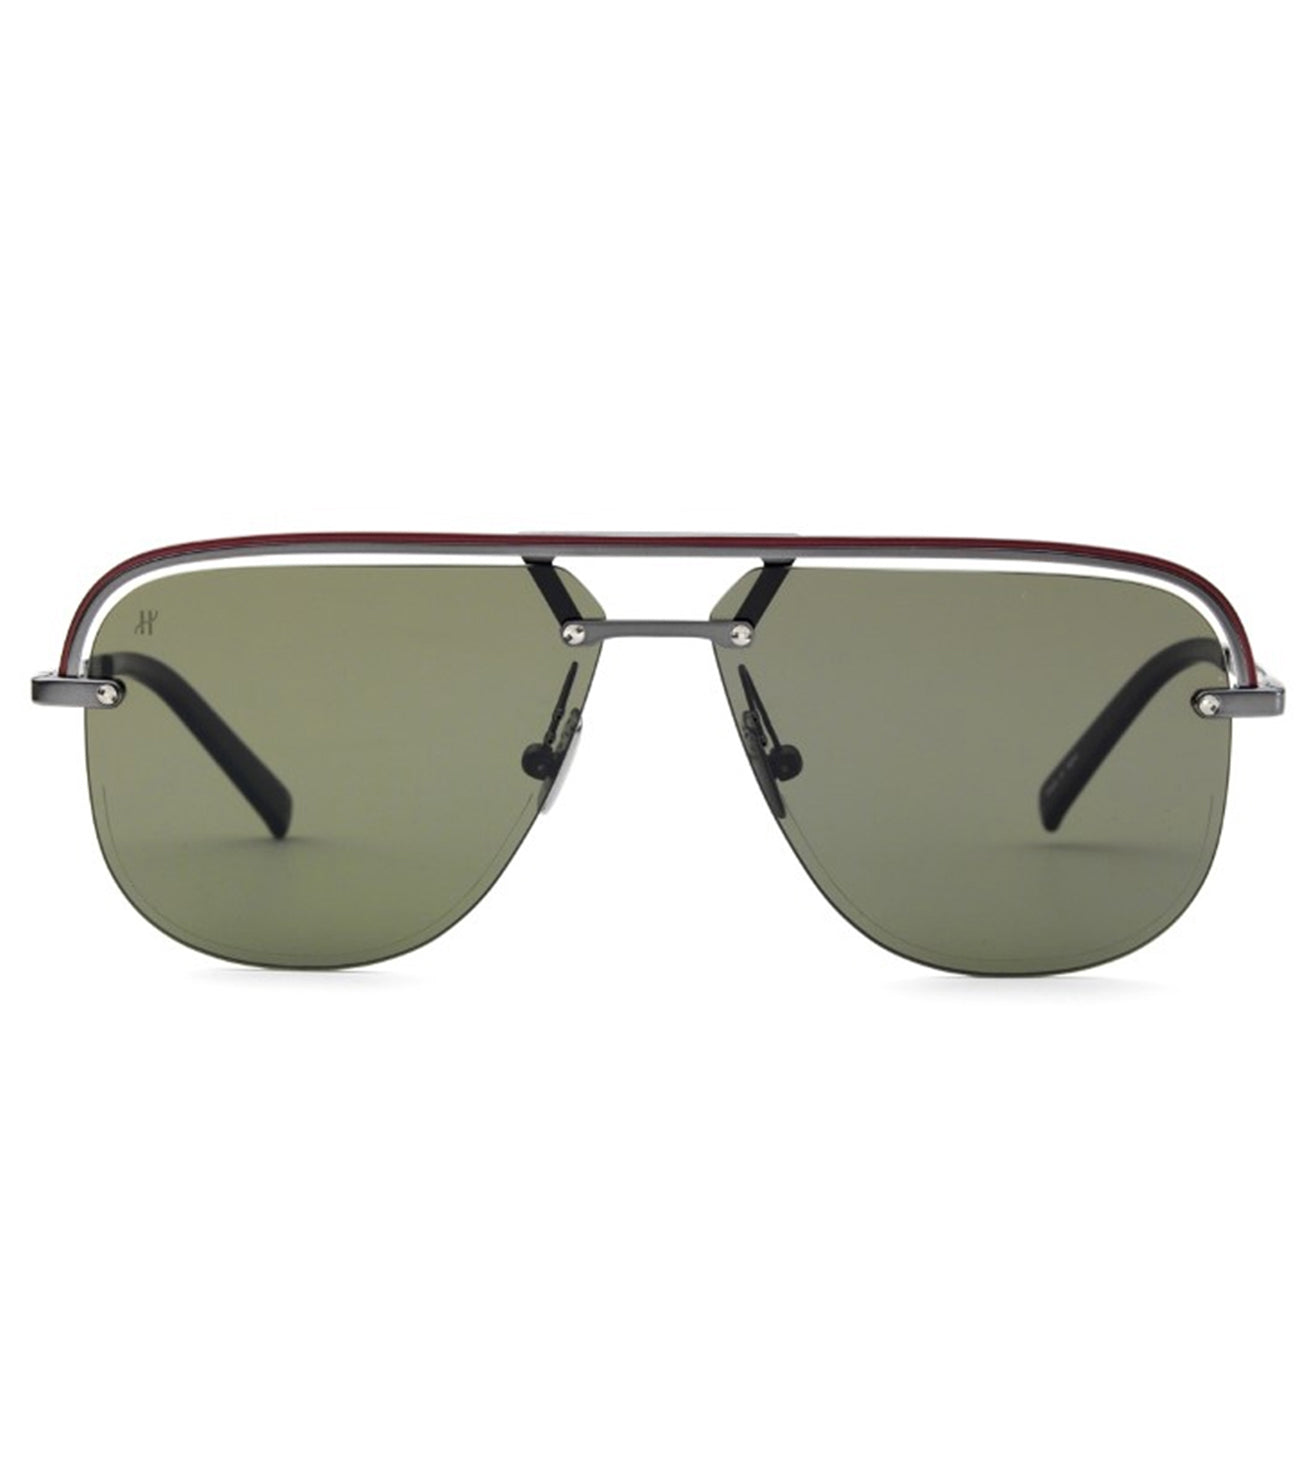 Hublot Unisex Grey-mirrored Aviator Sunglasses